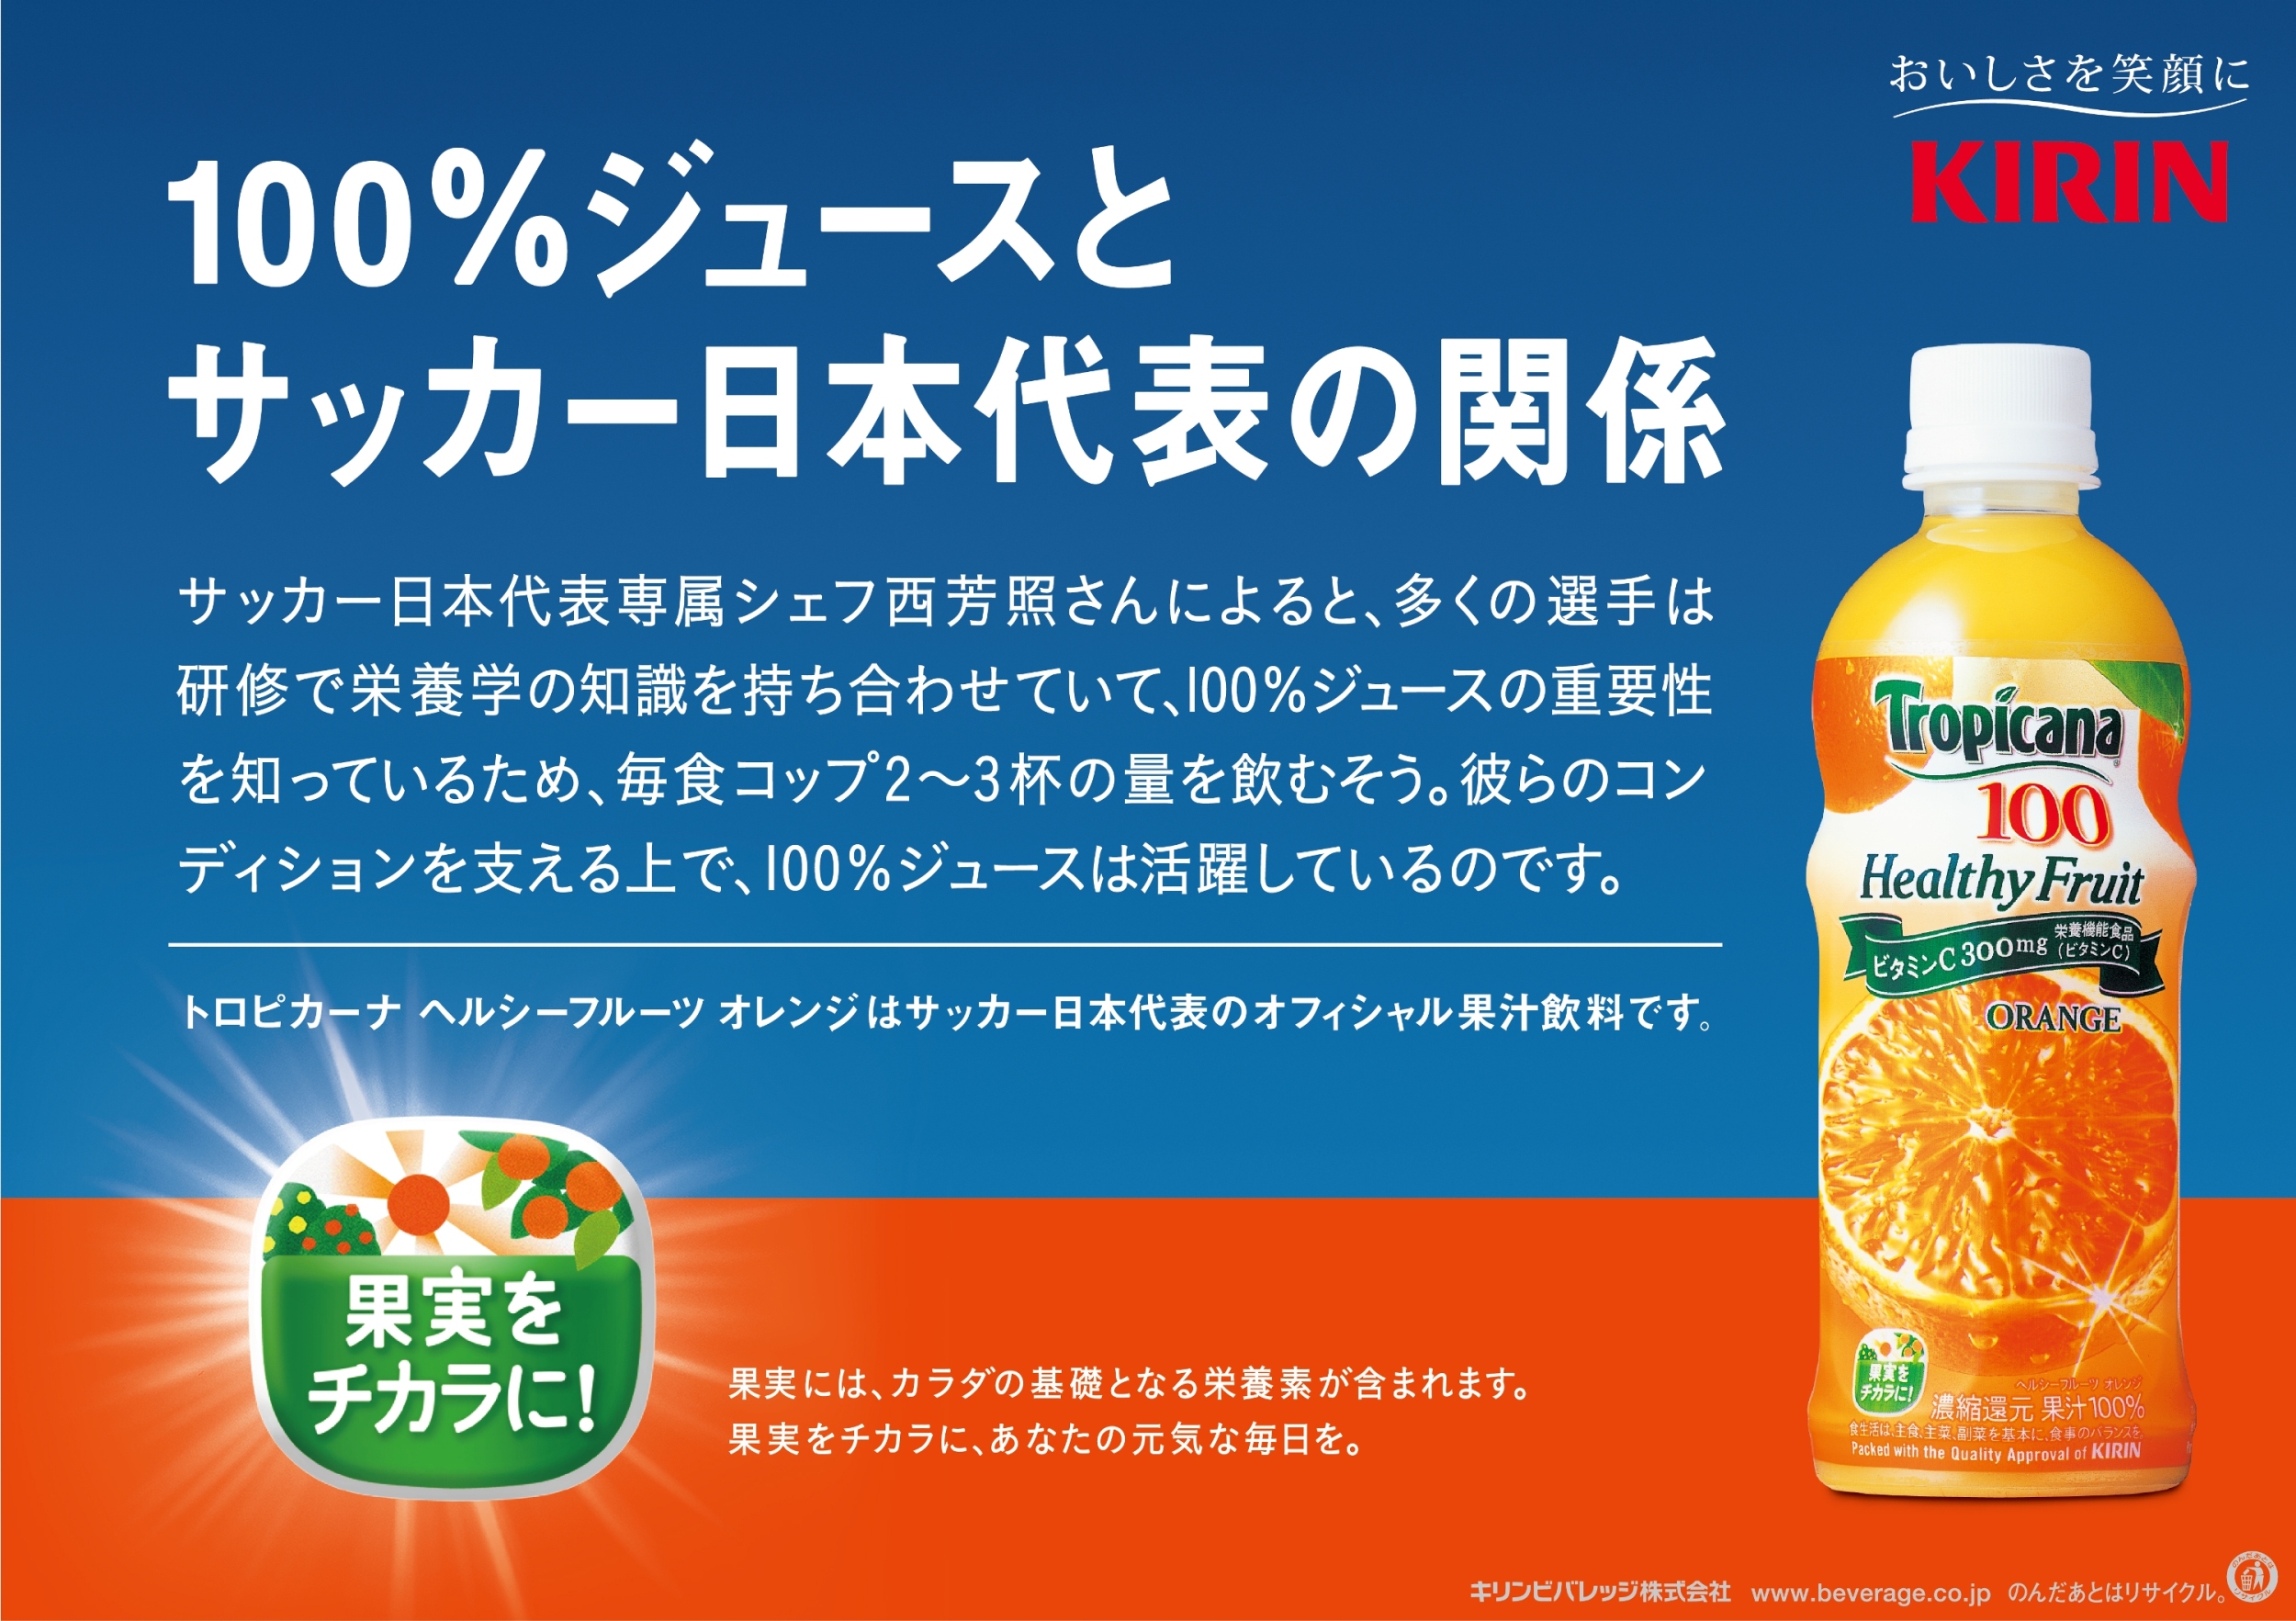 サッカー日本代表オフィシャル果汁飲料の トロピカーナ ヘルシー